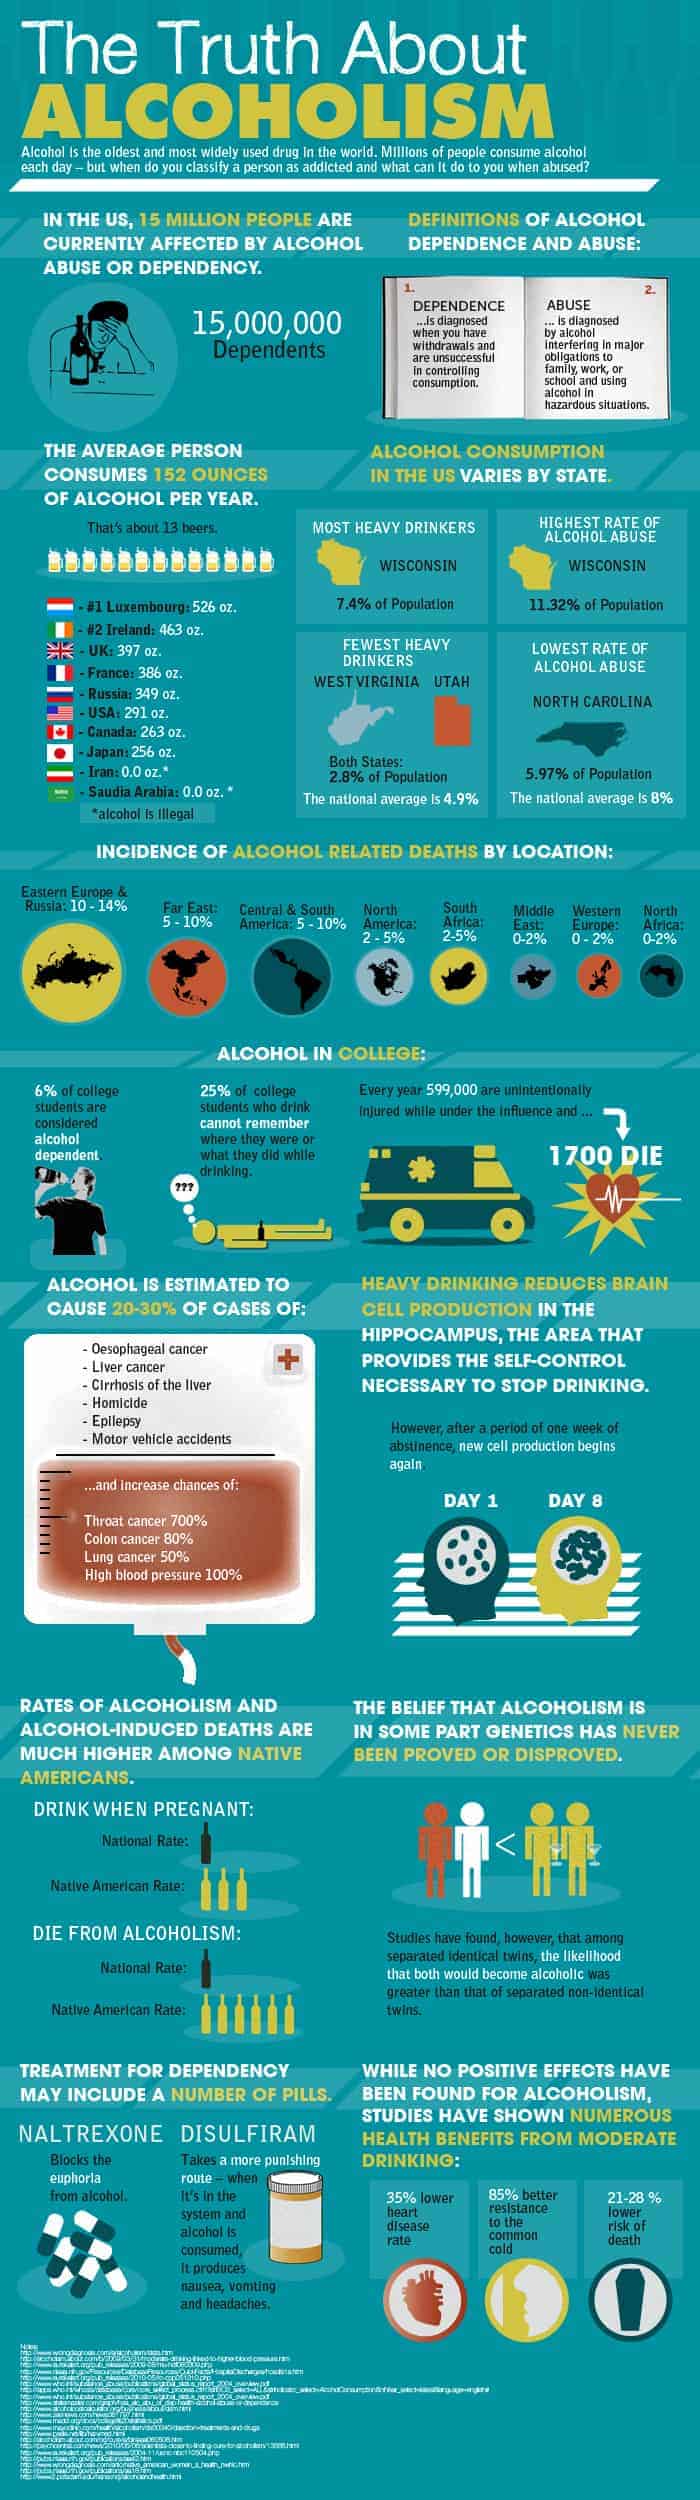 La verdad sobre el alcoholismo - Infografía